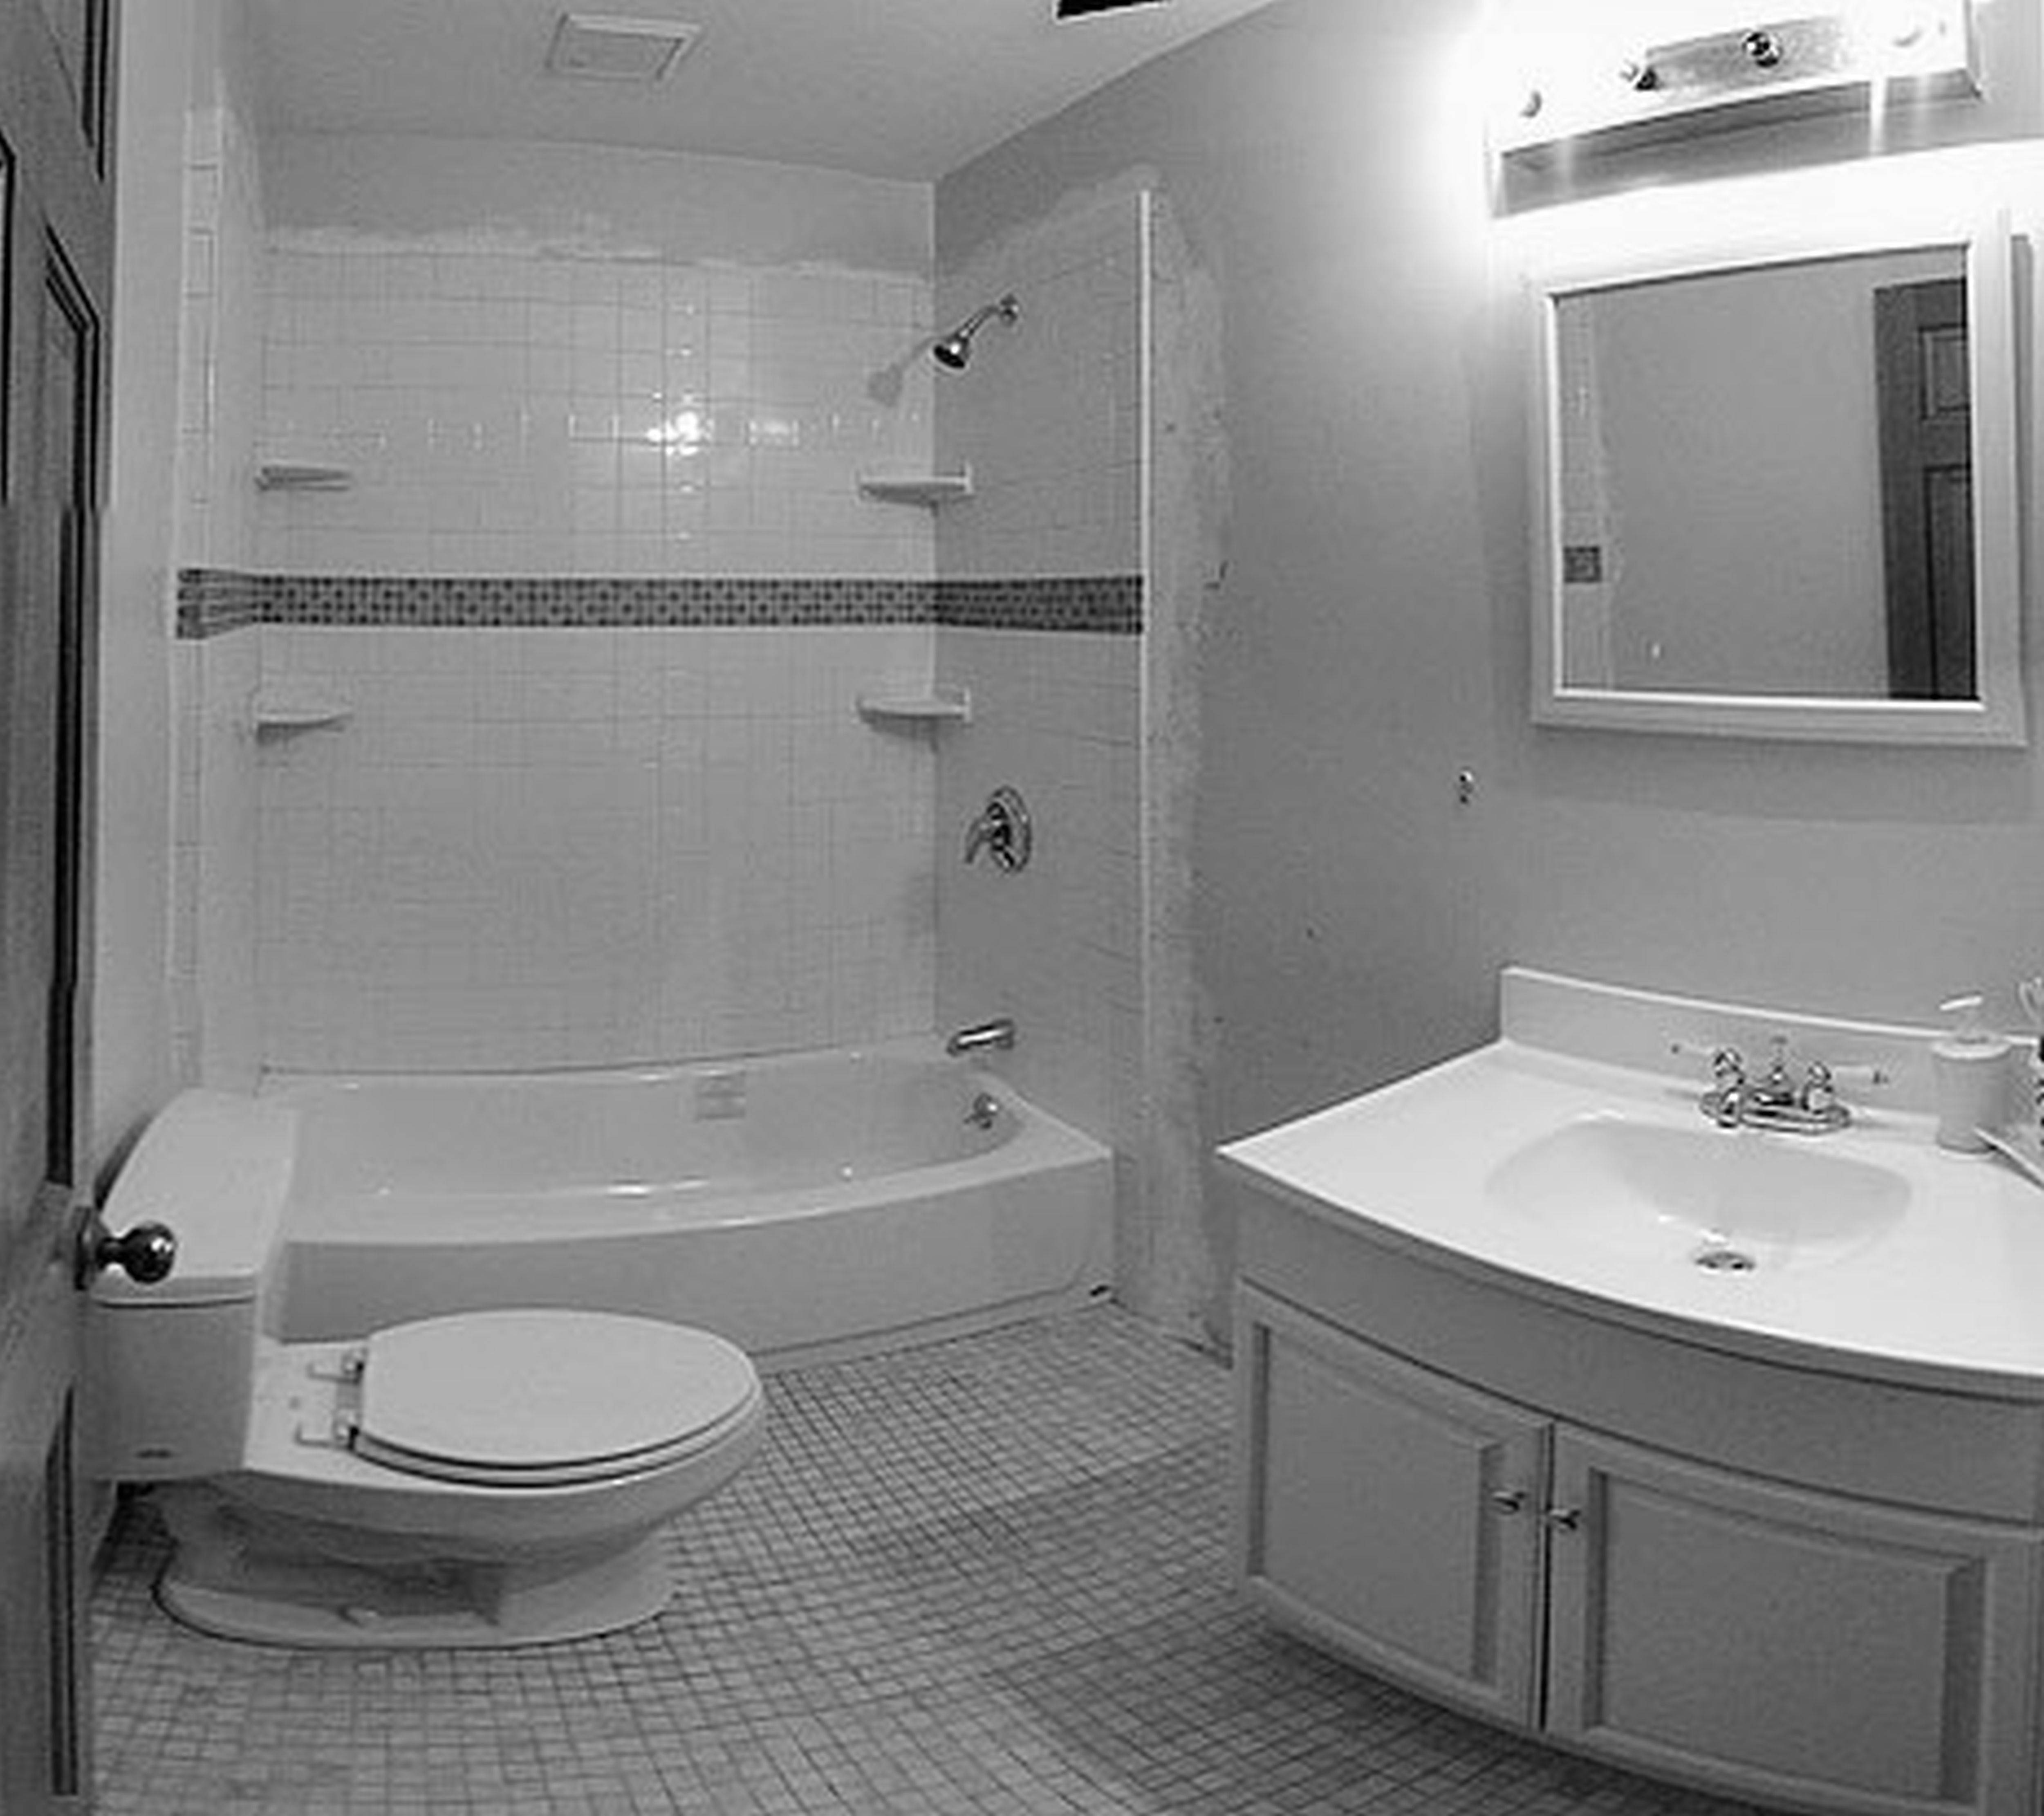 Евроремонт ванной комнаты (54 фото): обновляем интерьер по евростандартам